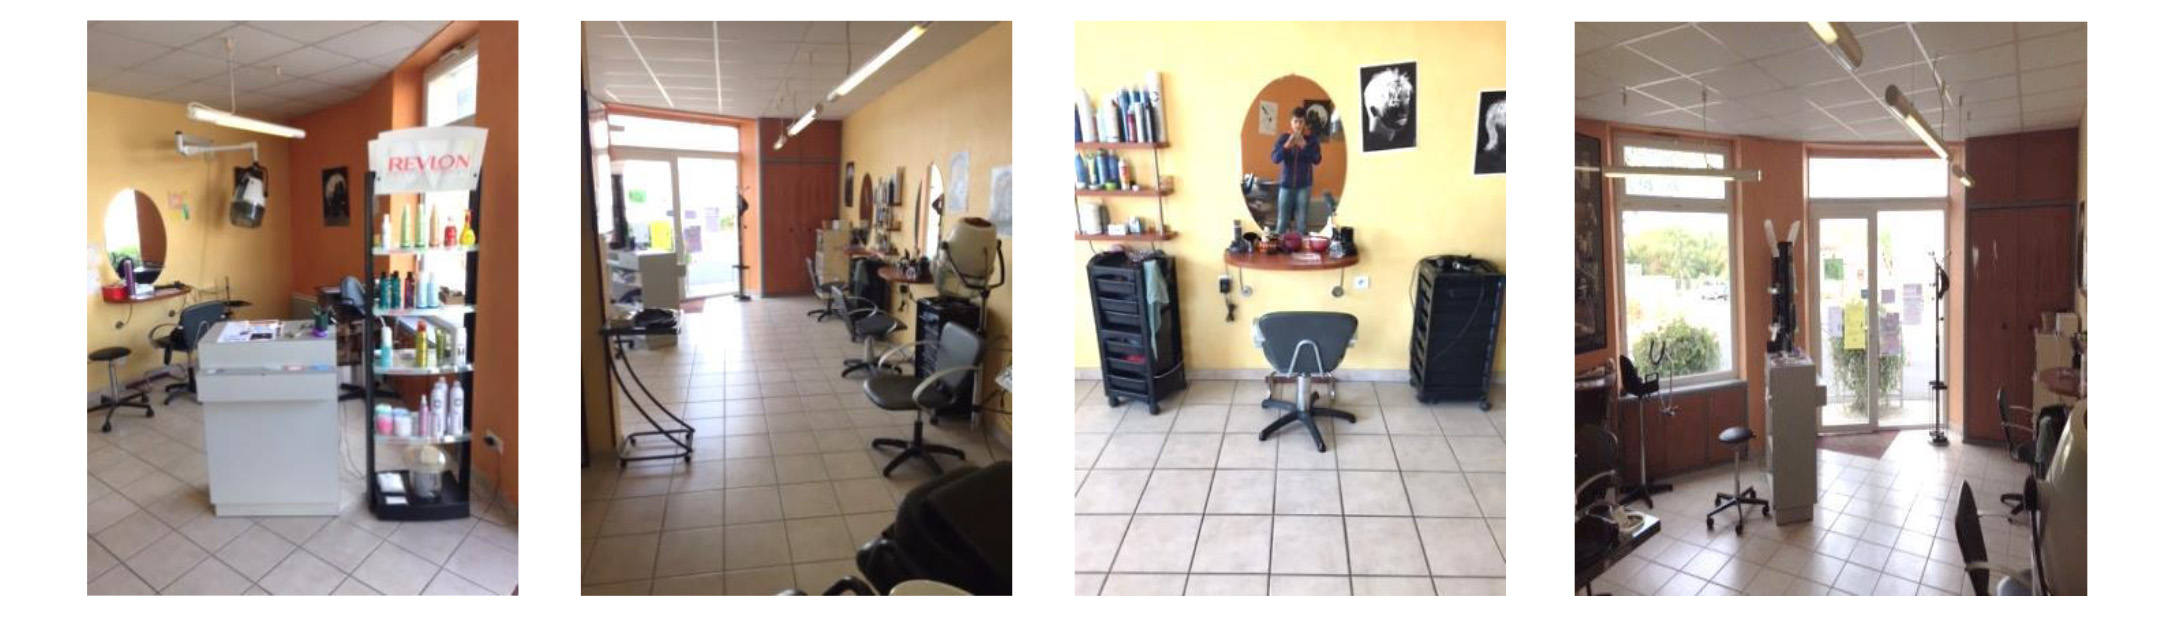 Salon de coiffure à vendre